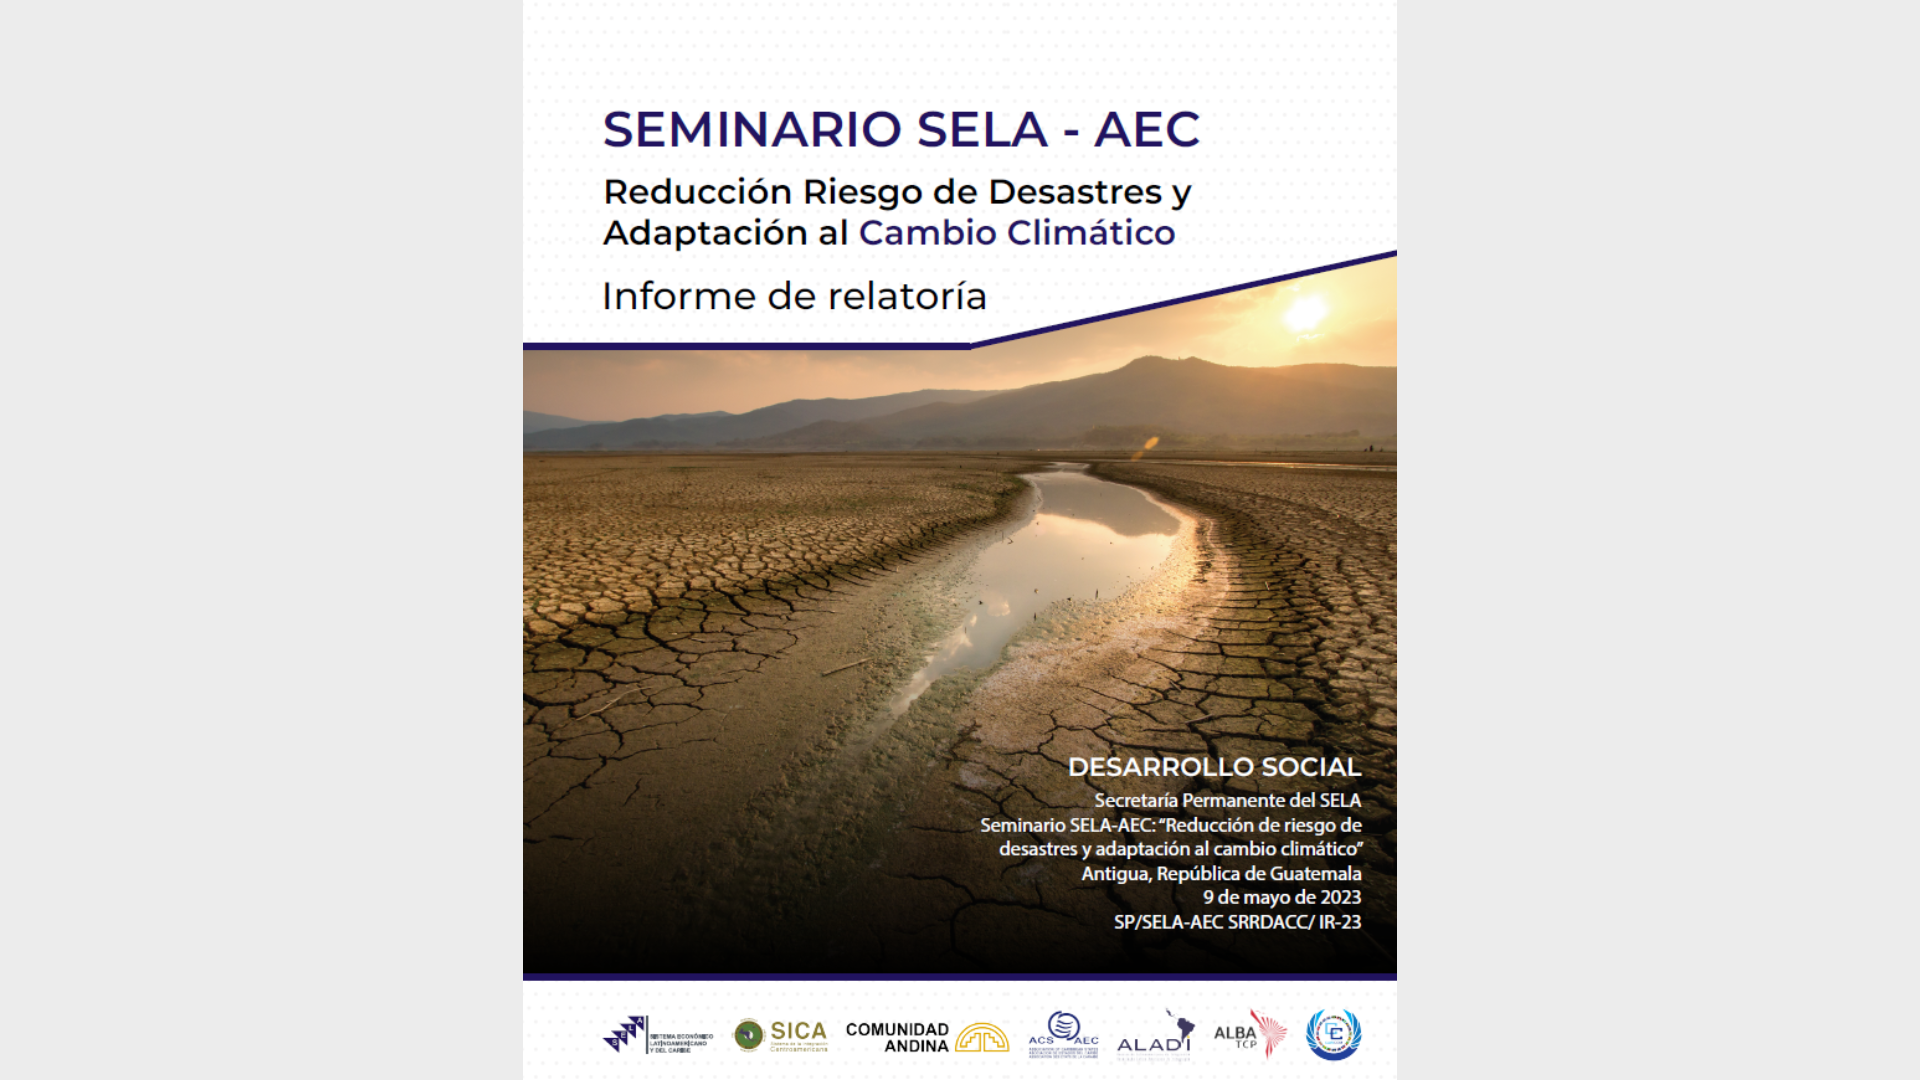 Seminario SELA-AEC: Reducción de riesgo de desastres y cambio climático - Informe de relatoría